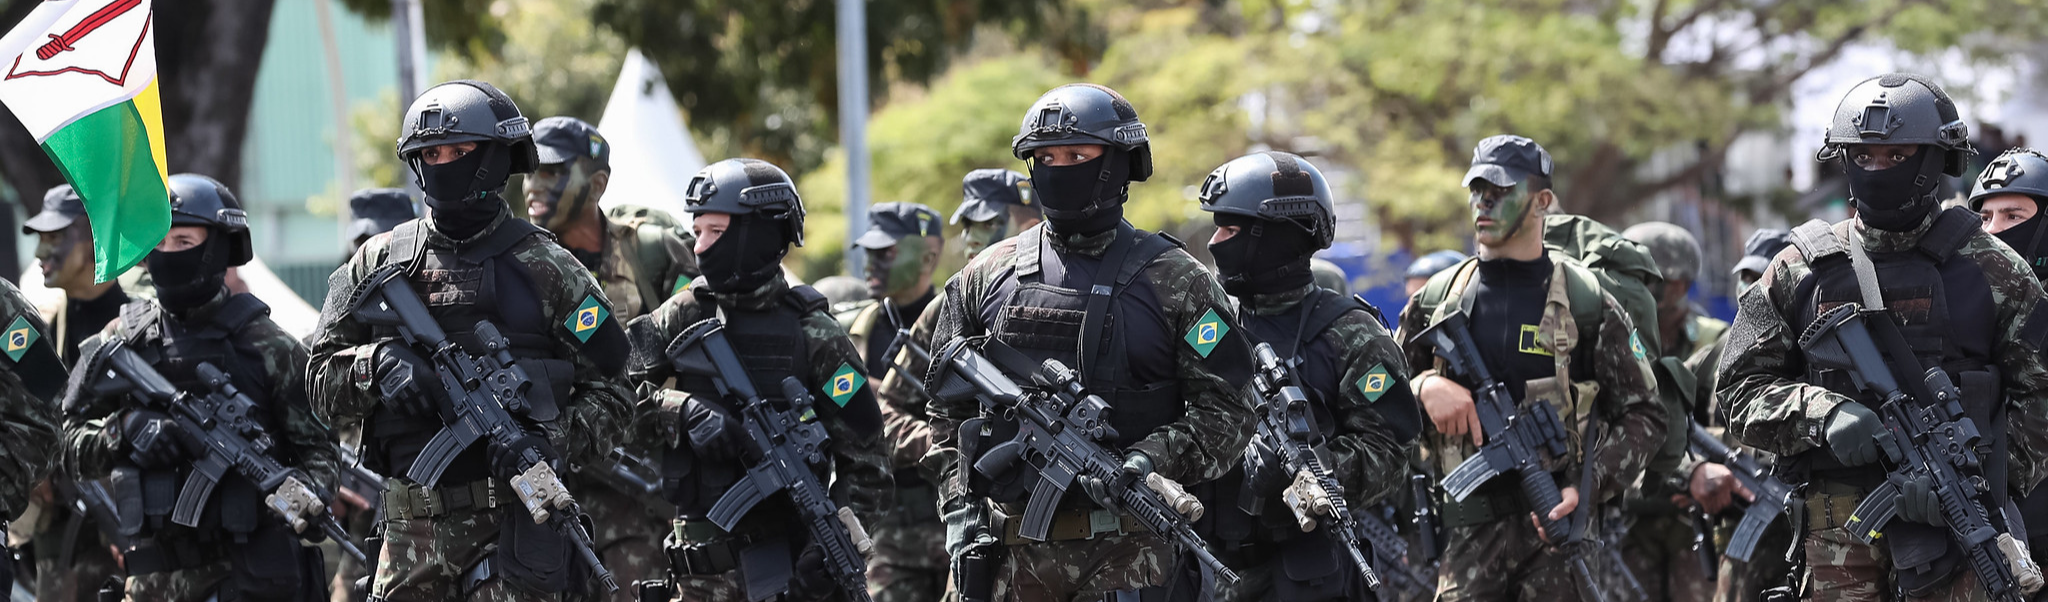 Há um movimento de militares que já percebeu que Bolsonaro não é o que esperavam